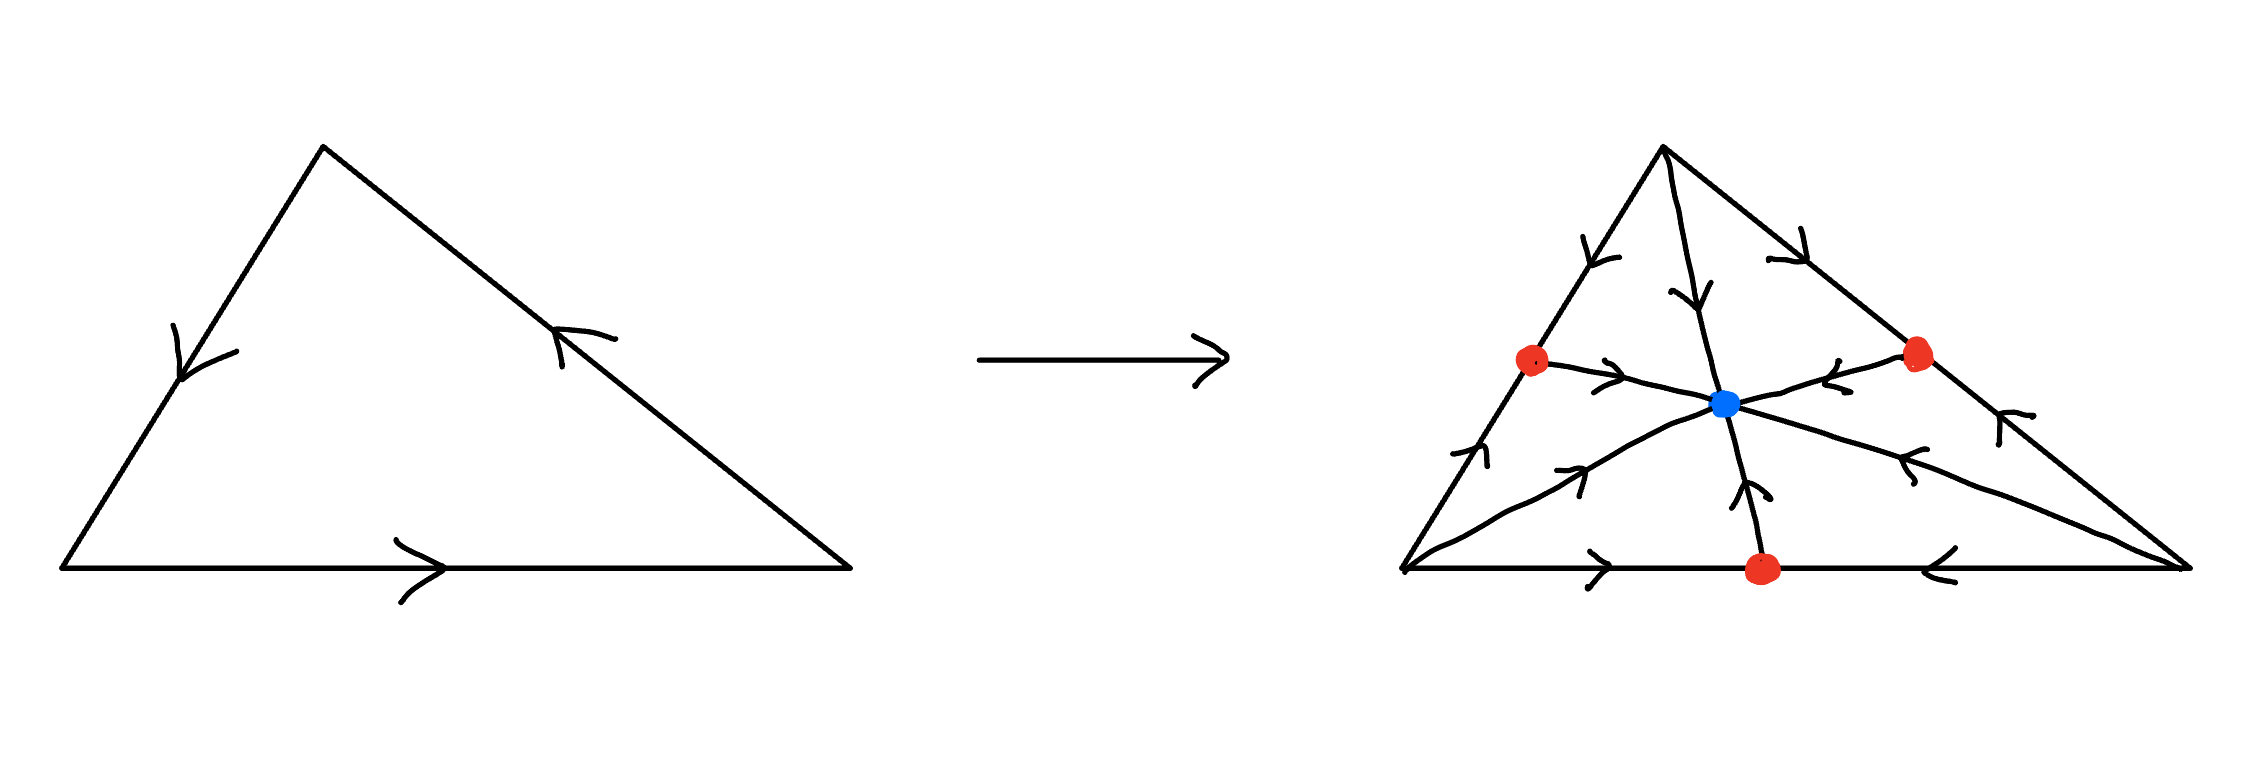 三角形領域に4点（辺上の赤3点、面内の青1点）を加え、線で結び、矢印を付す。